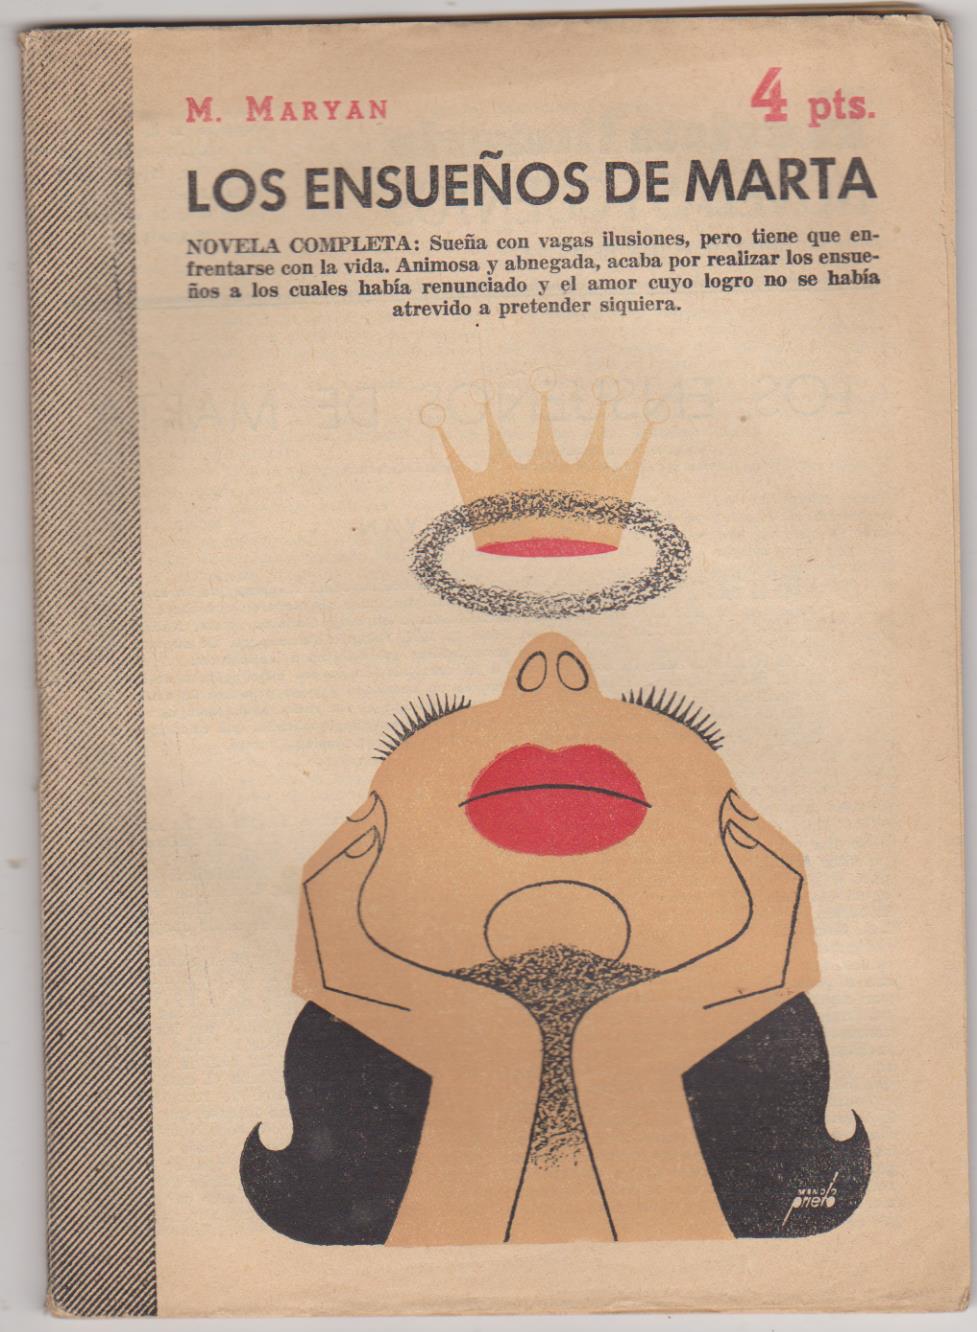 Revista Literaria no 1303. M. Maryan. Los ensueños de marta. Año 1956